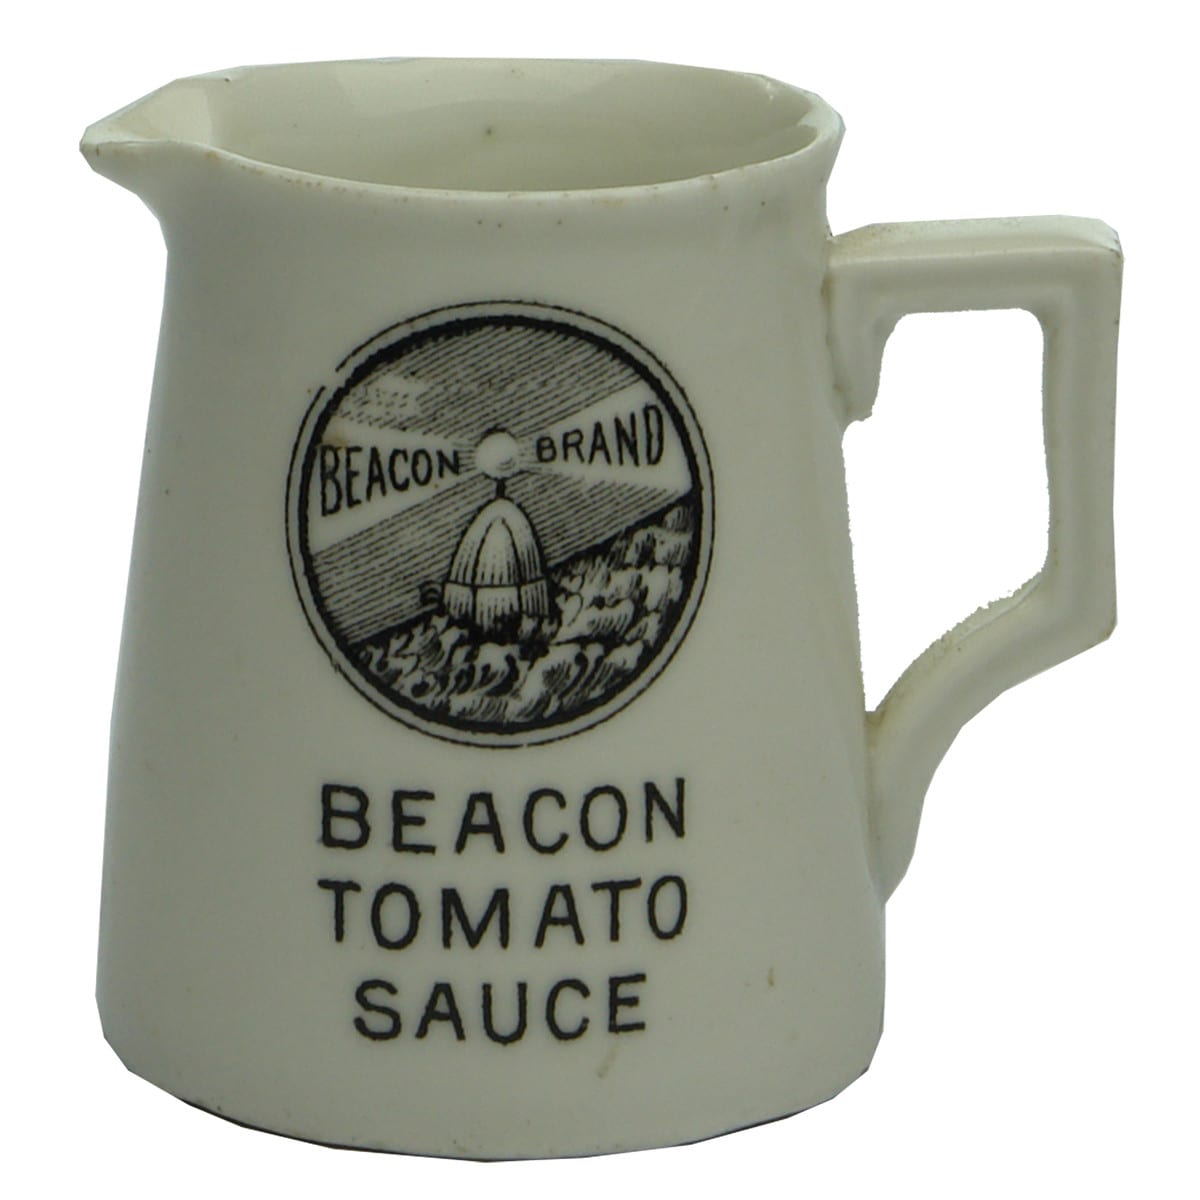 Sauce. Little Beacon Tomato Sauce Jug. (Geelong, Victoria)